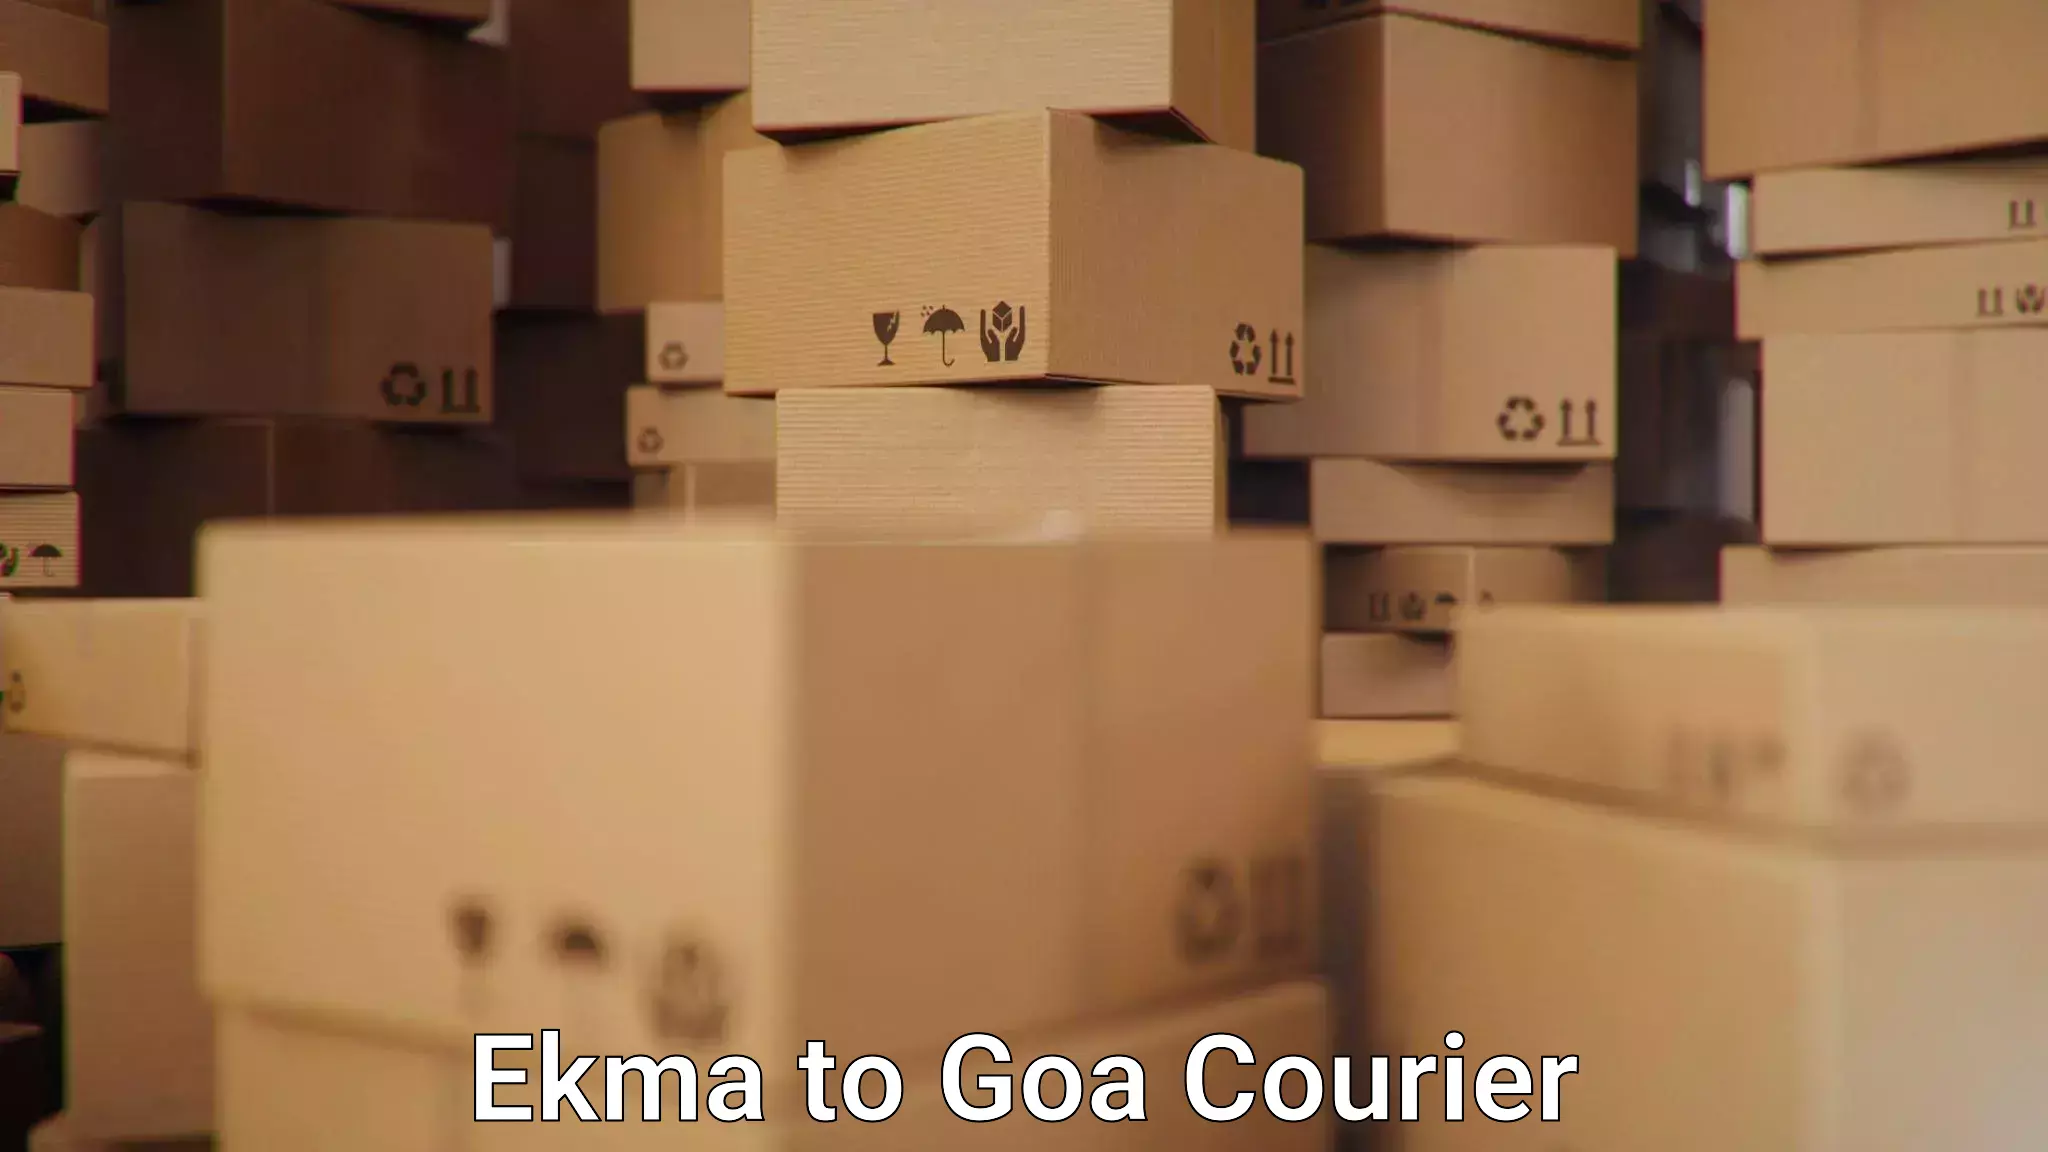 Express postal services Ekma to NIT Goa